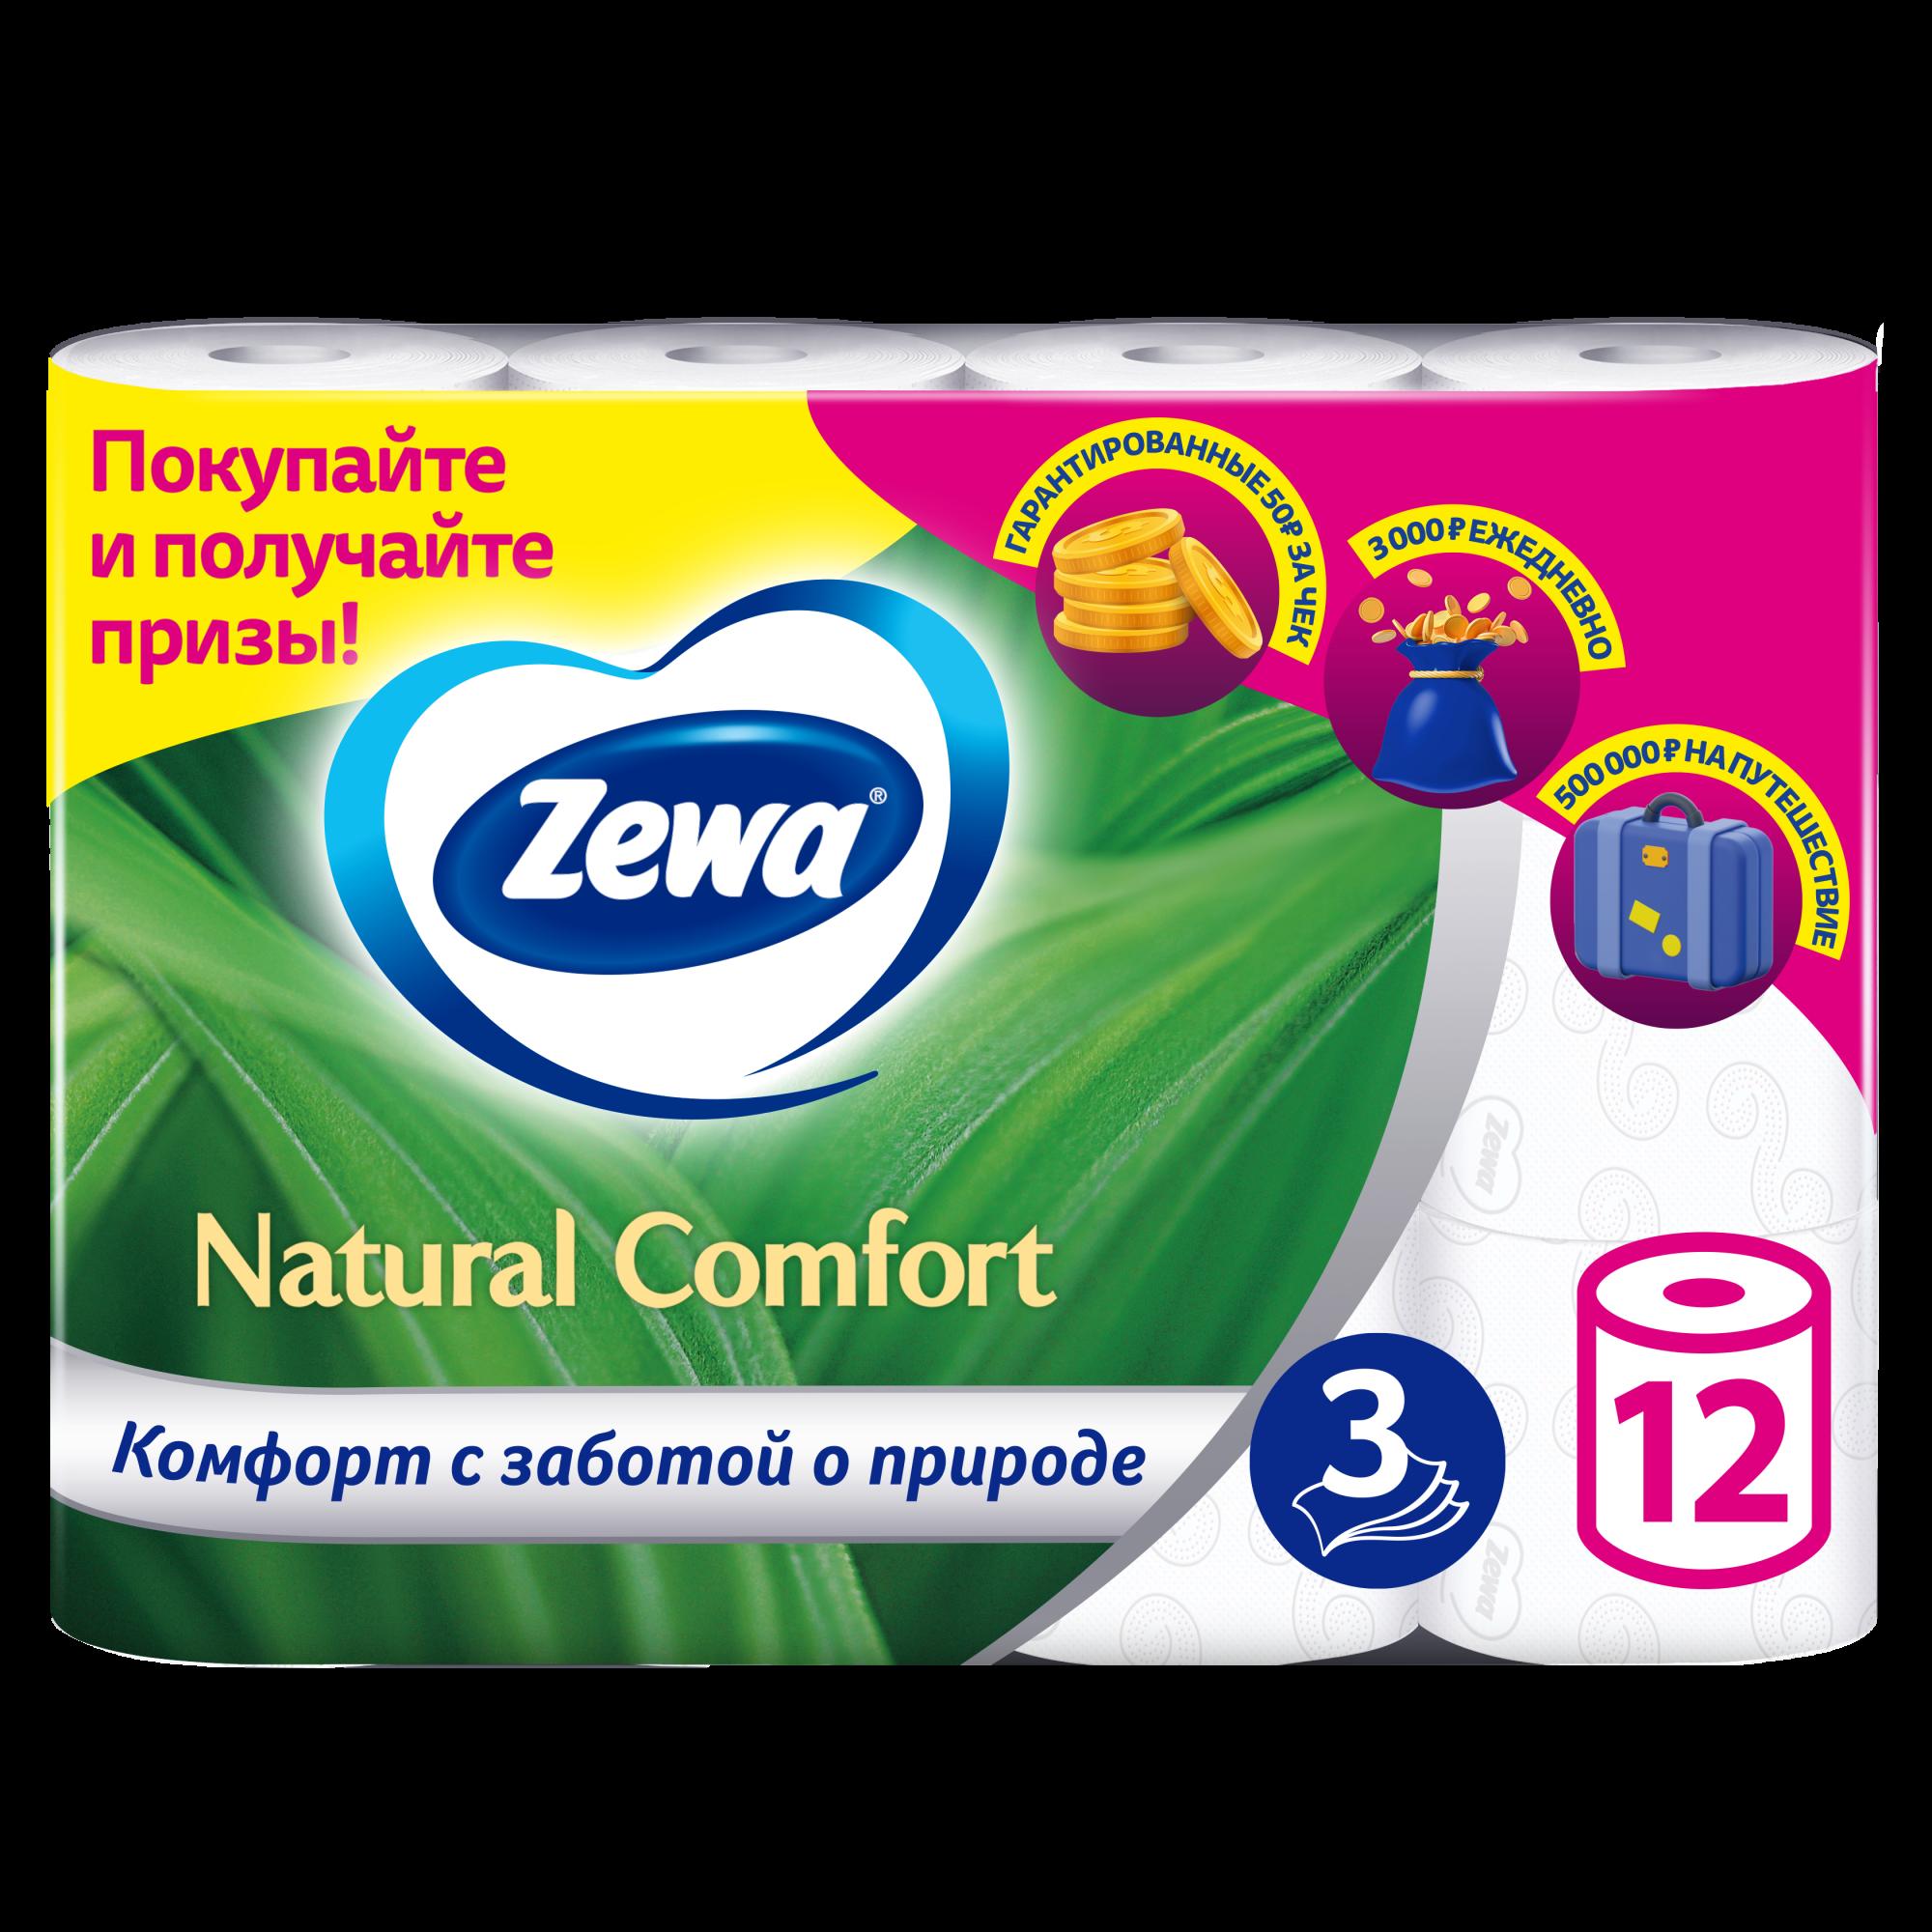 Бумага туалетная Zewa Natural Comfort, белая, 3 слоя, 12 рулонов